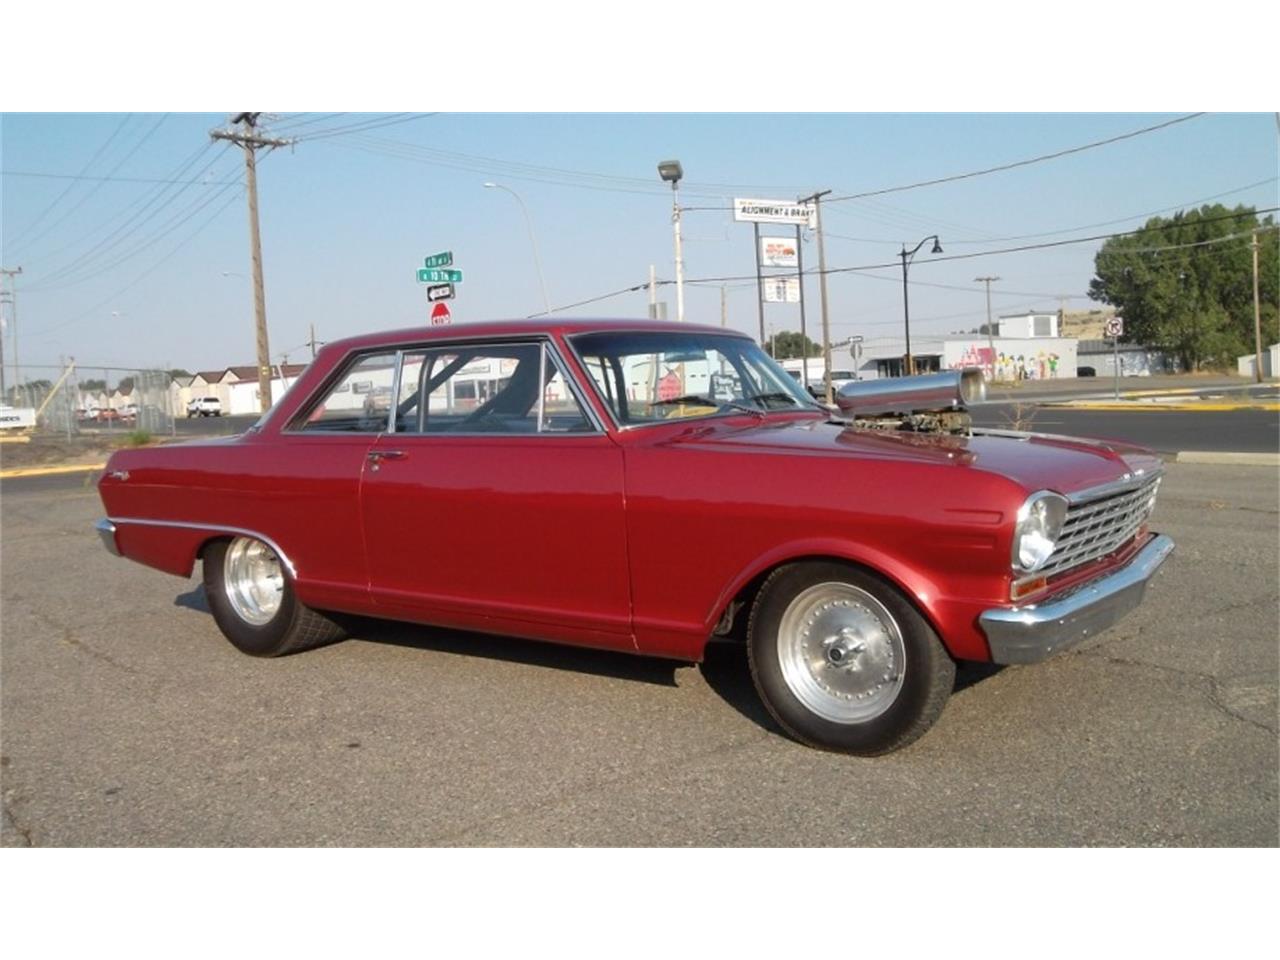 1963 Chevrolet Nova Ii For Sale Classiccars Com Cc